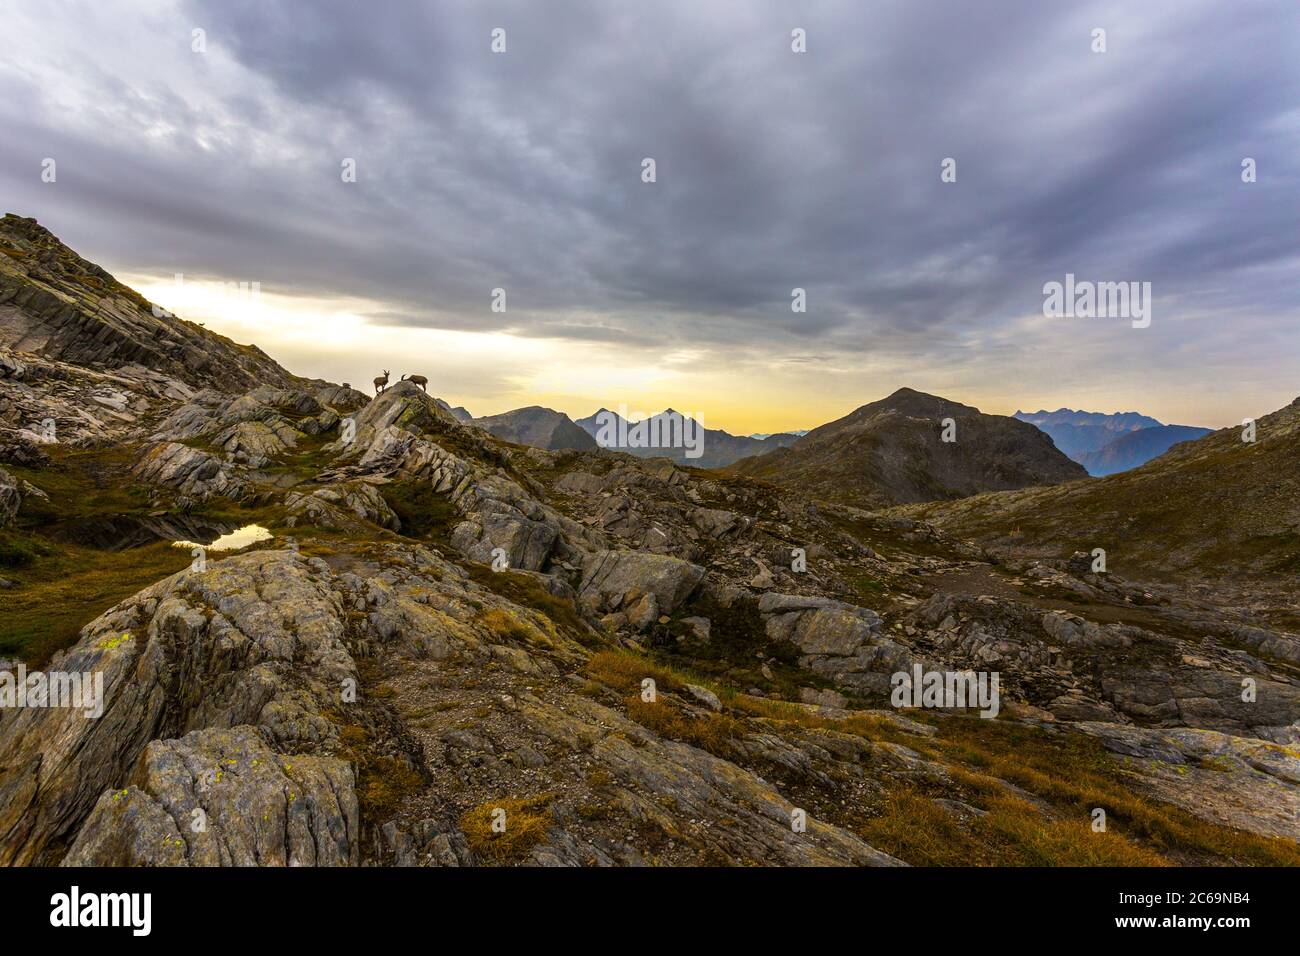 Sonnenaufgang in den Schweizer Alpen mit Chamoisen - Huette Cadlimo am Lukmanierpass, Kanton Tessin, Schweiz Stockfoto